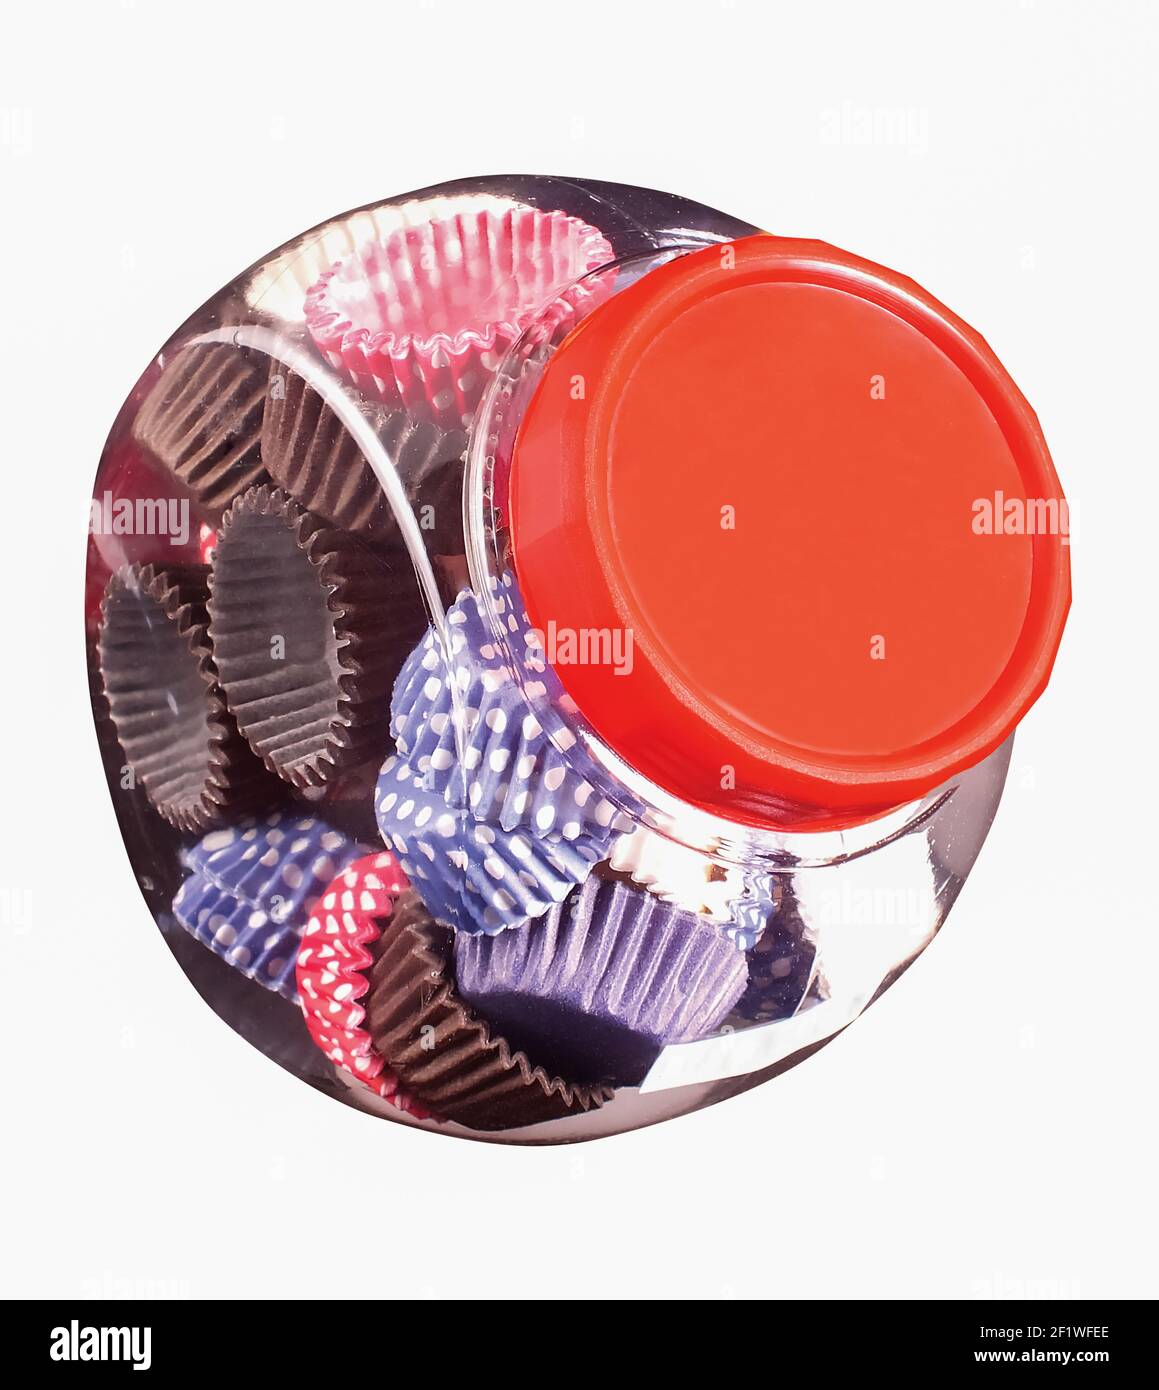 Papierkörbe in einem Glasgefäß, ein Produkt, das von der Lebensmittelindustrie oder Süßwaren verwendet wird Stockfoto